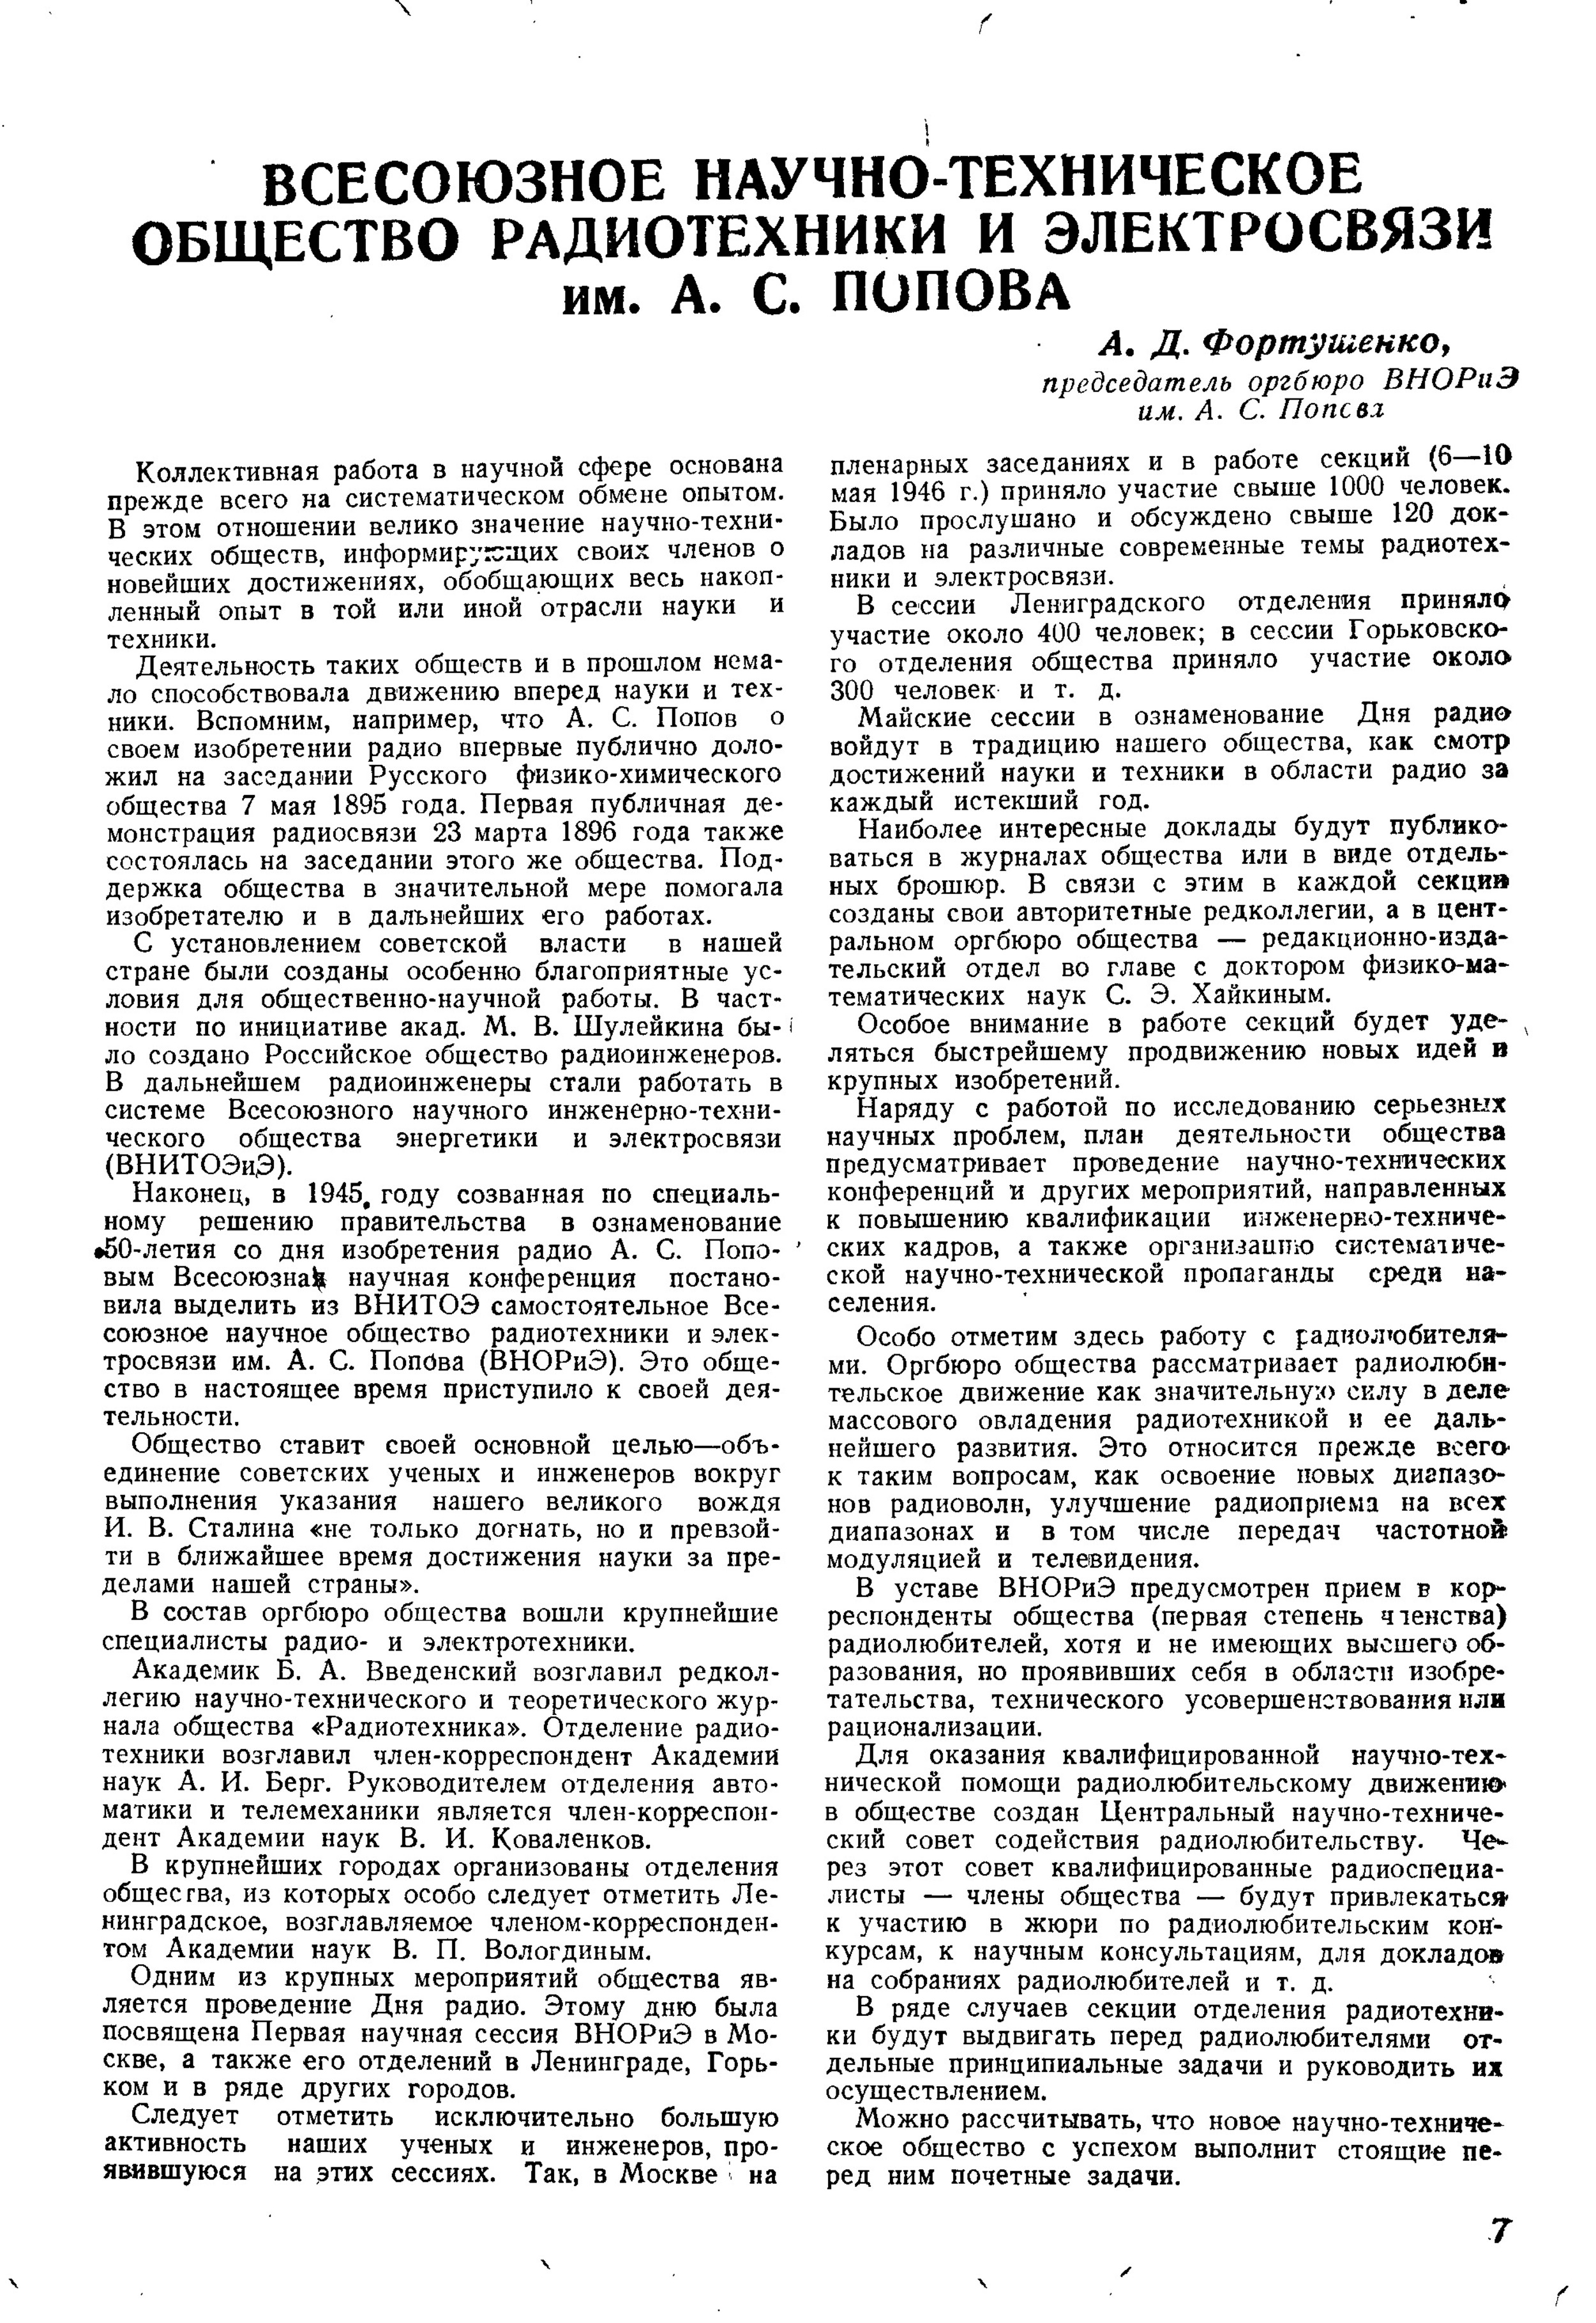 Стр. 7 журнала «Радио» № 3 за 1946 год (крупно)